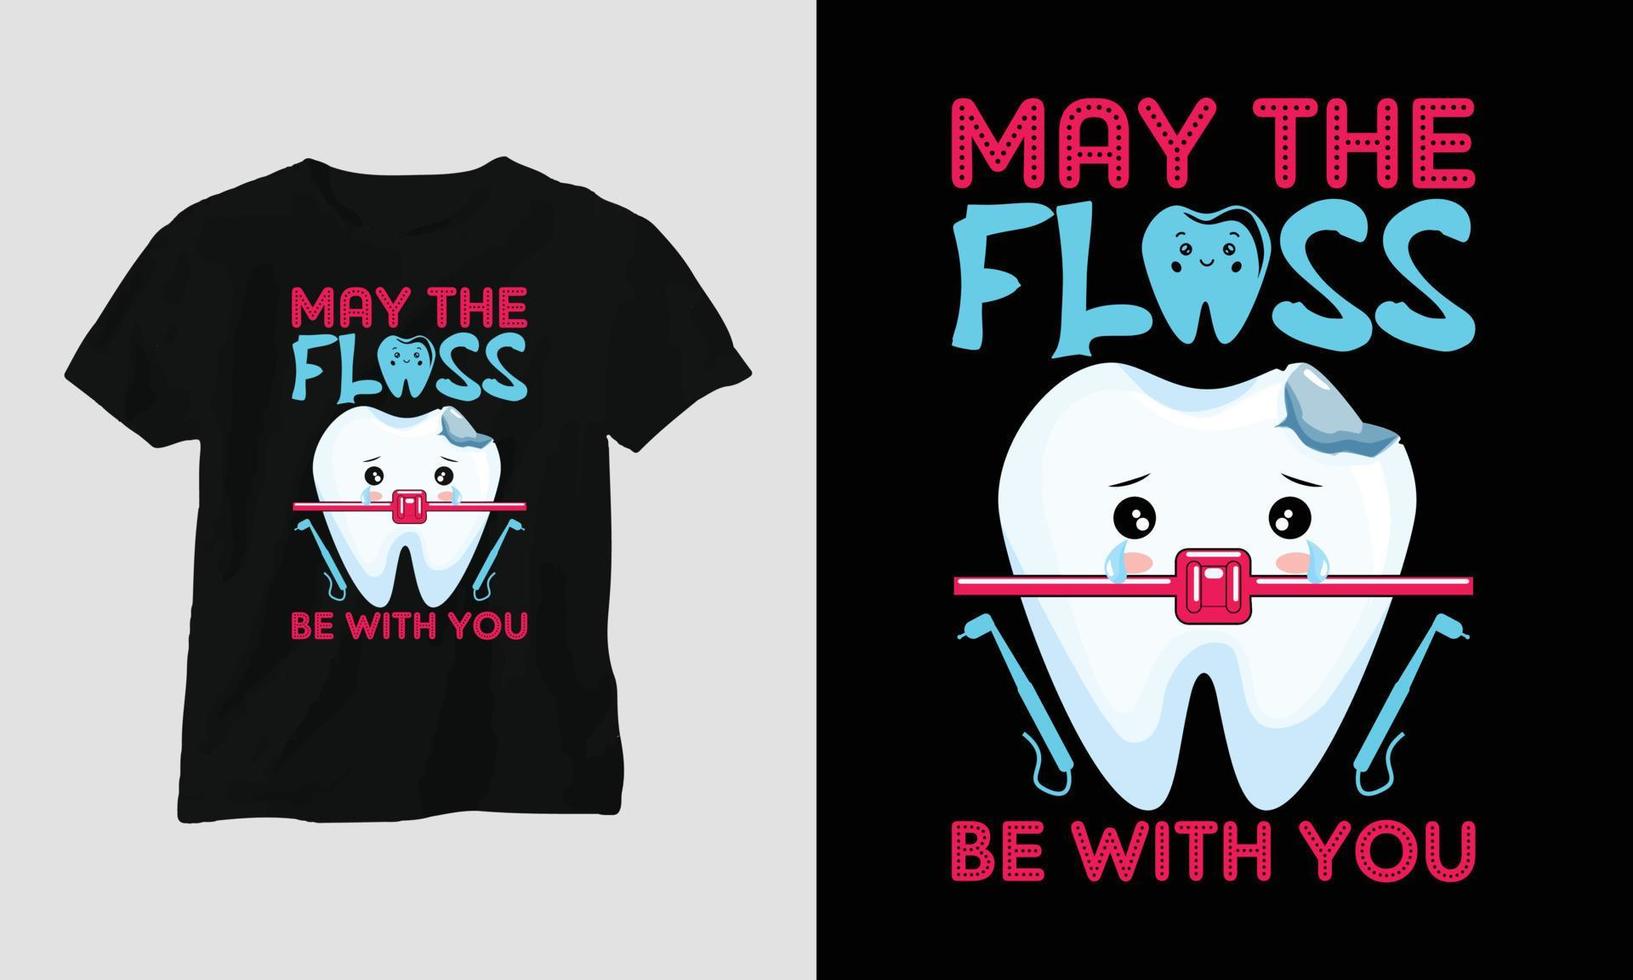 Vektor-Zahnarzt-T-Shirt oder Poster niedliches Design mit Cartoon-Zahn, Zahnelementen usw. vektor